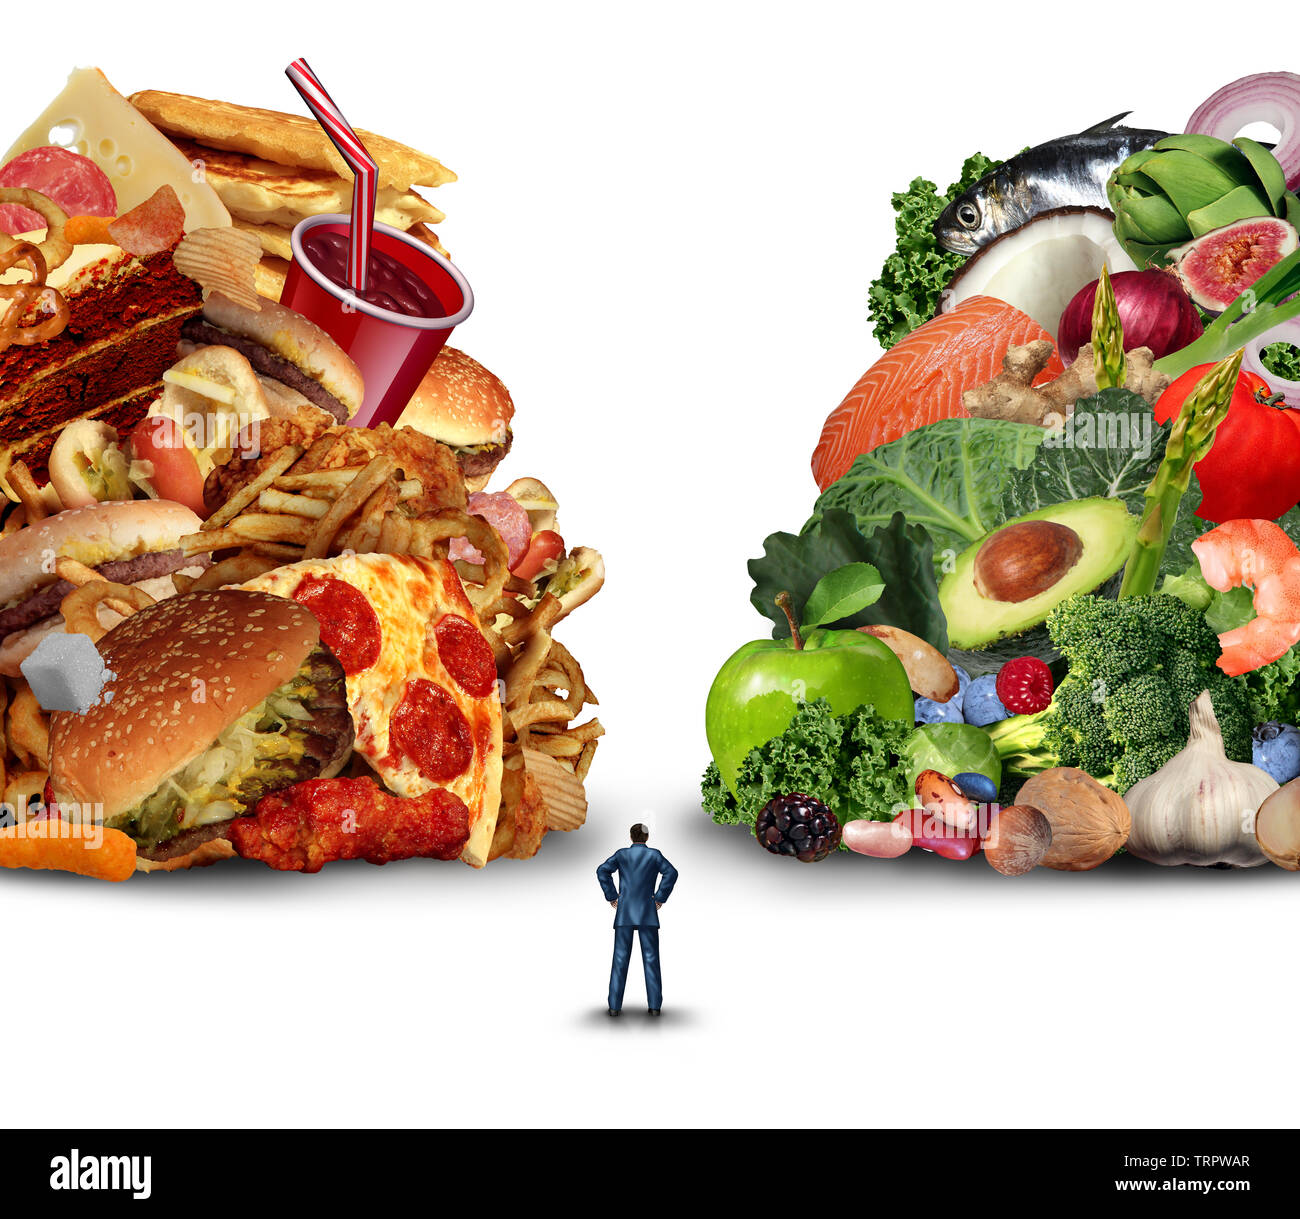 Diät lifestyle Entscheidung Konzept und Ernährung Entscheidungen Dilemma zwischen gesunden gutes, frisches Obst und Gemüse oder fettigen Cholesterin. Stockfoto